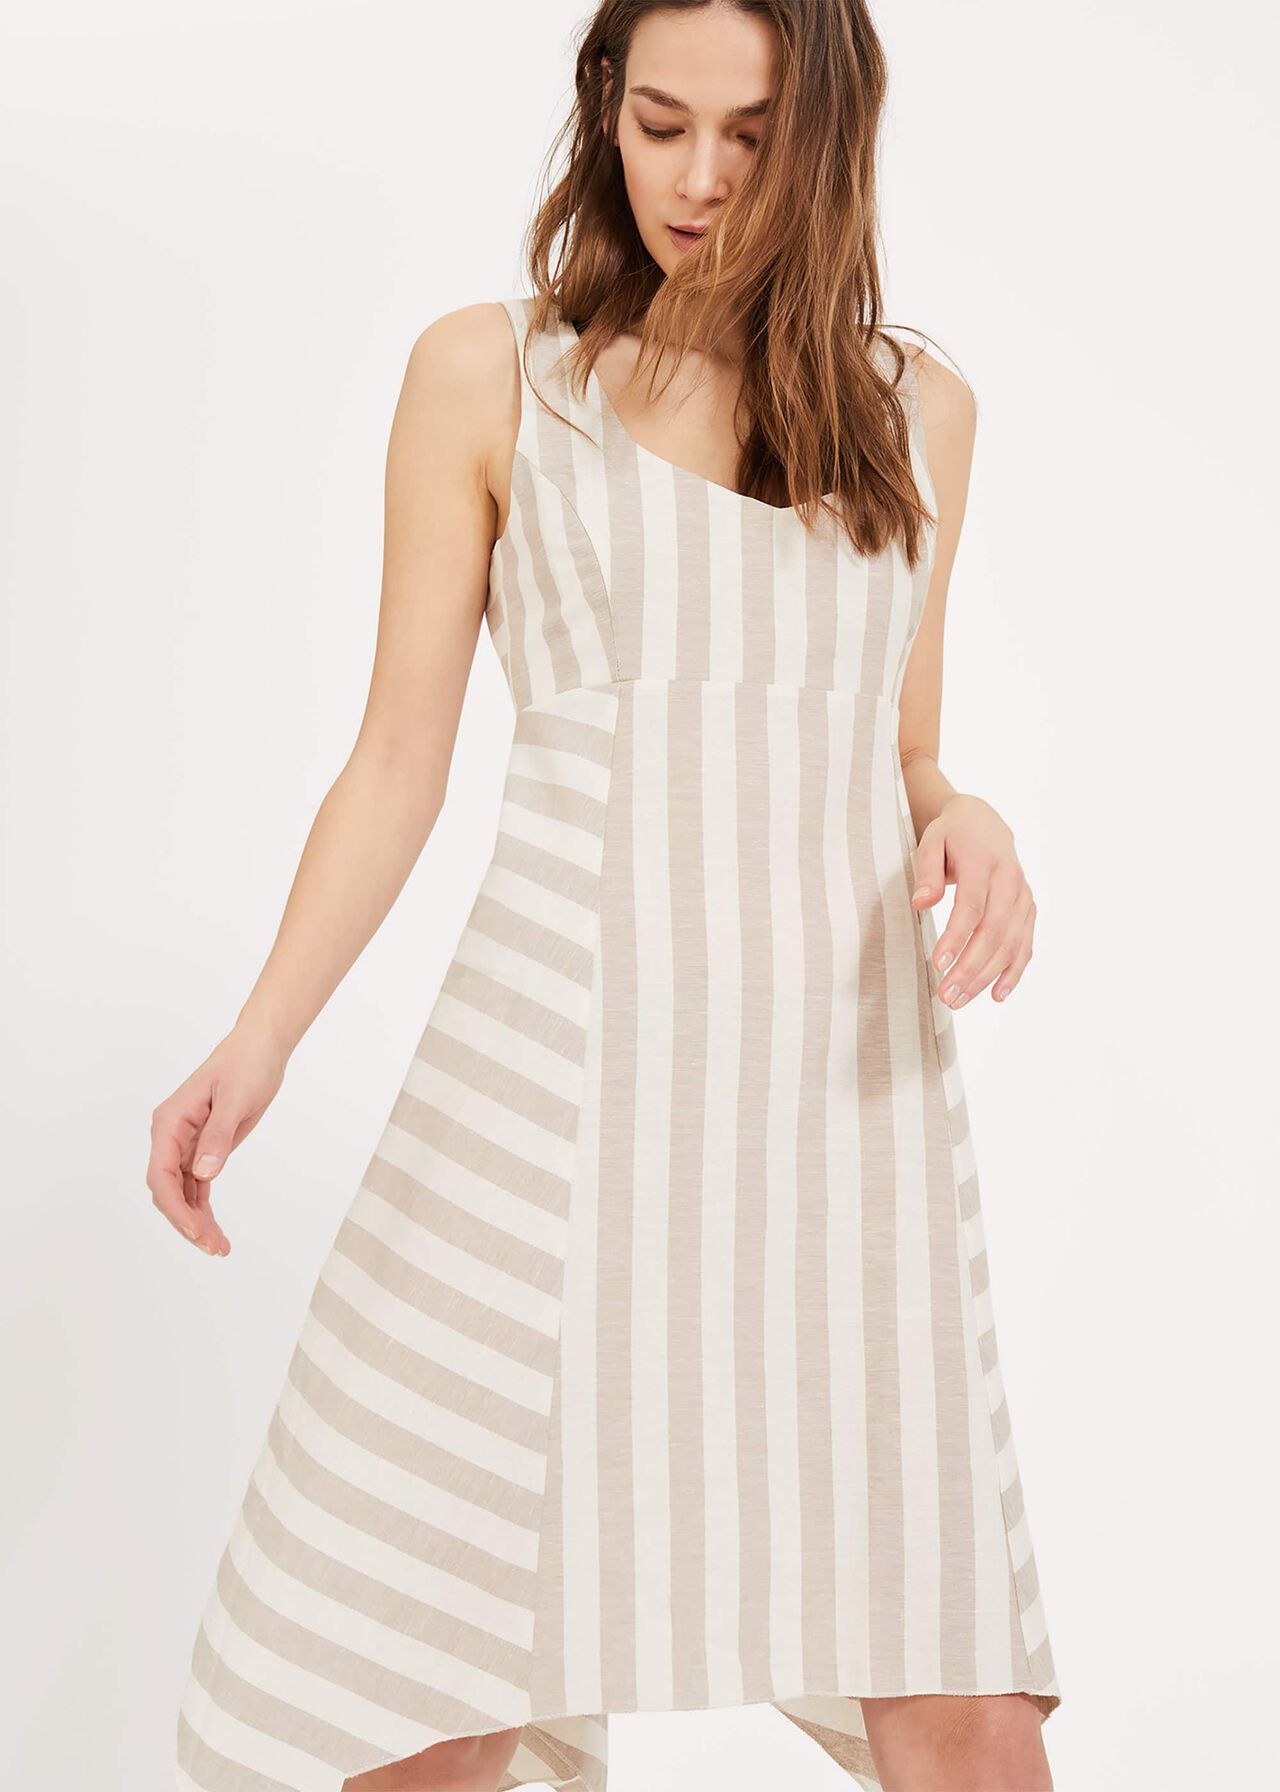 Susie Linen Stripe Dress